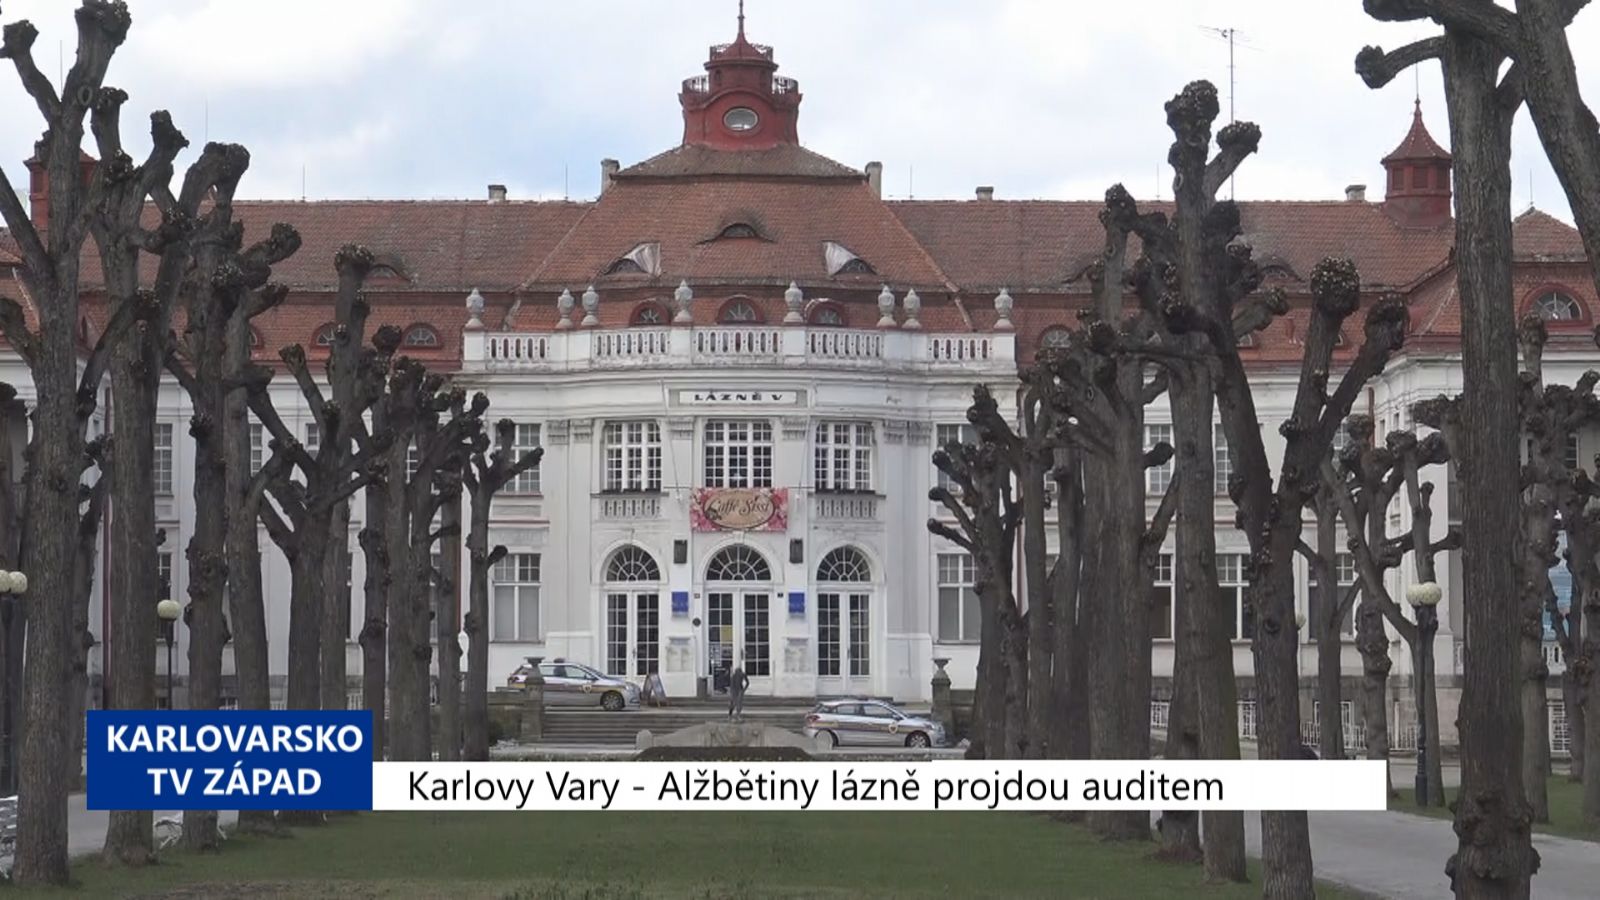 Karlovy Vary: Alžbětiny lázně projdou auditem (TV Západ)